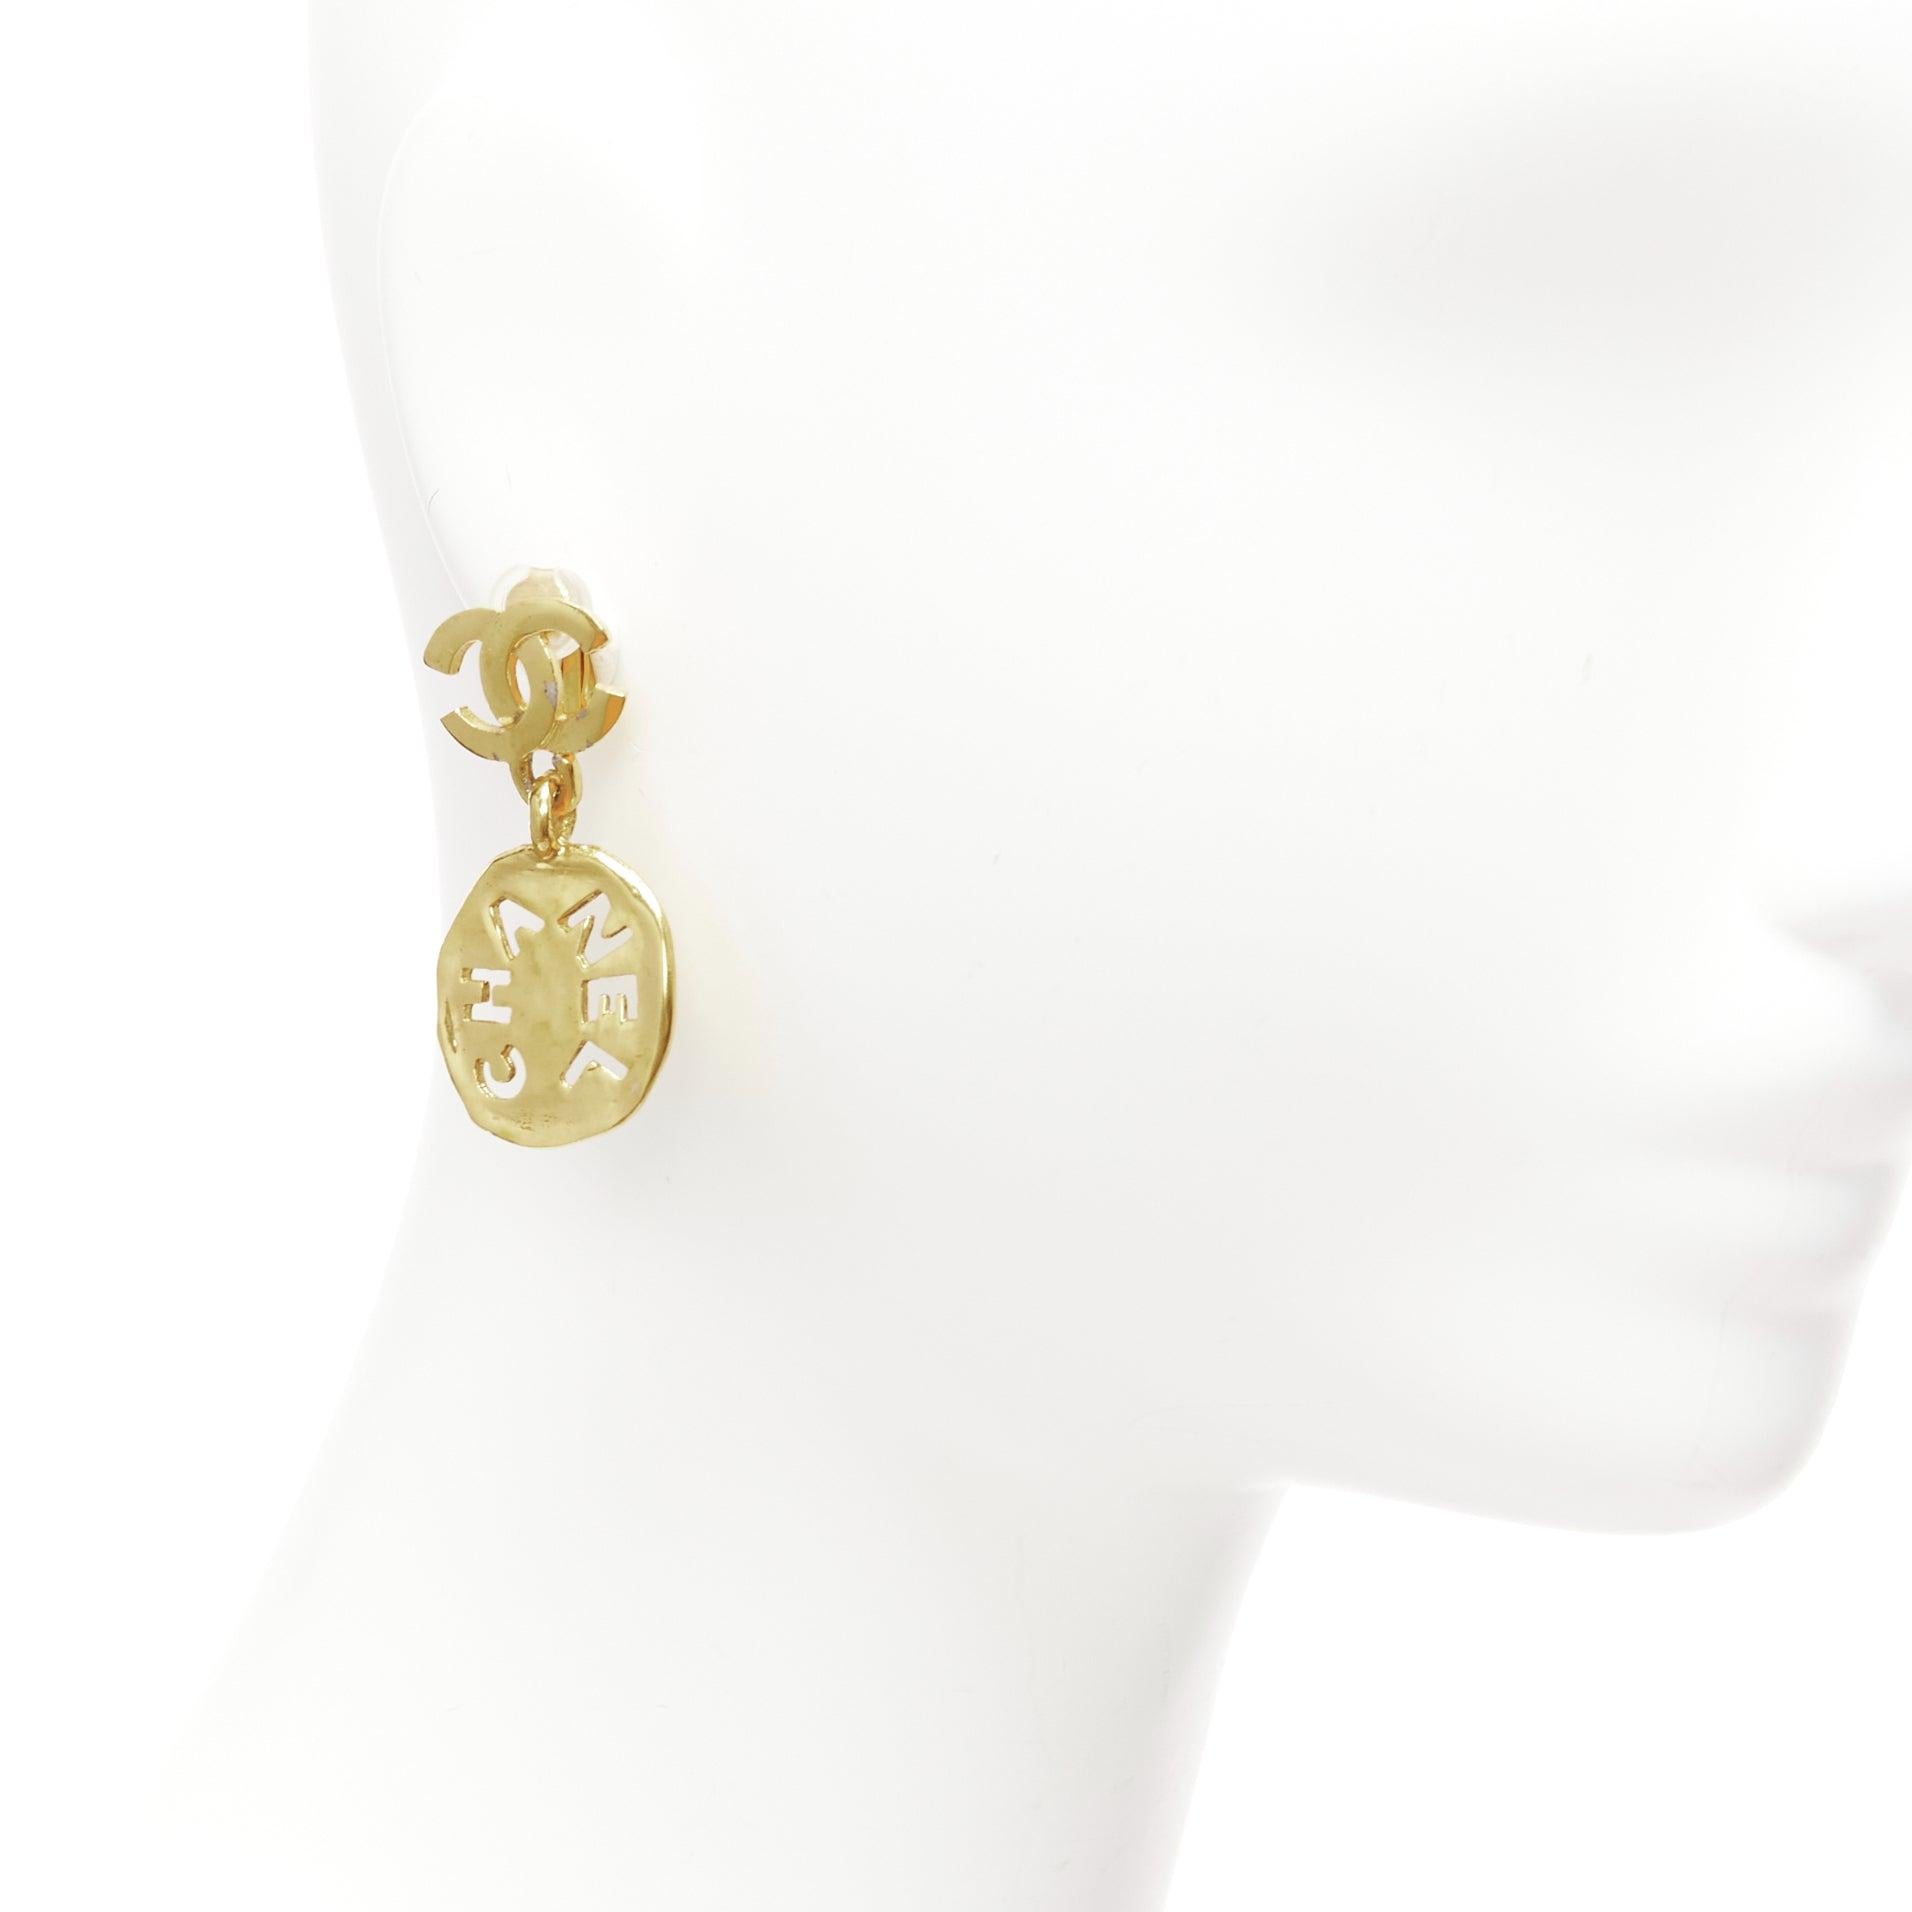 Seltener CHANEL Vintage Gold CC Logo geschliffener gehämmerter Münzklammer an Ohrringen, Vintage
Referenz: TGAS/D00905
Marke: Chanel
Designer: Karl Lagerfeld
MATERIAL: Metall
Farbe: Gold
Muster: Solide
Verschluss: Clip On
Auskleidung: Gold